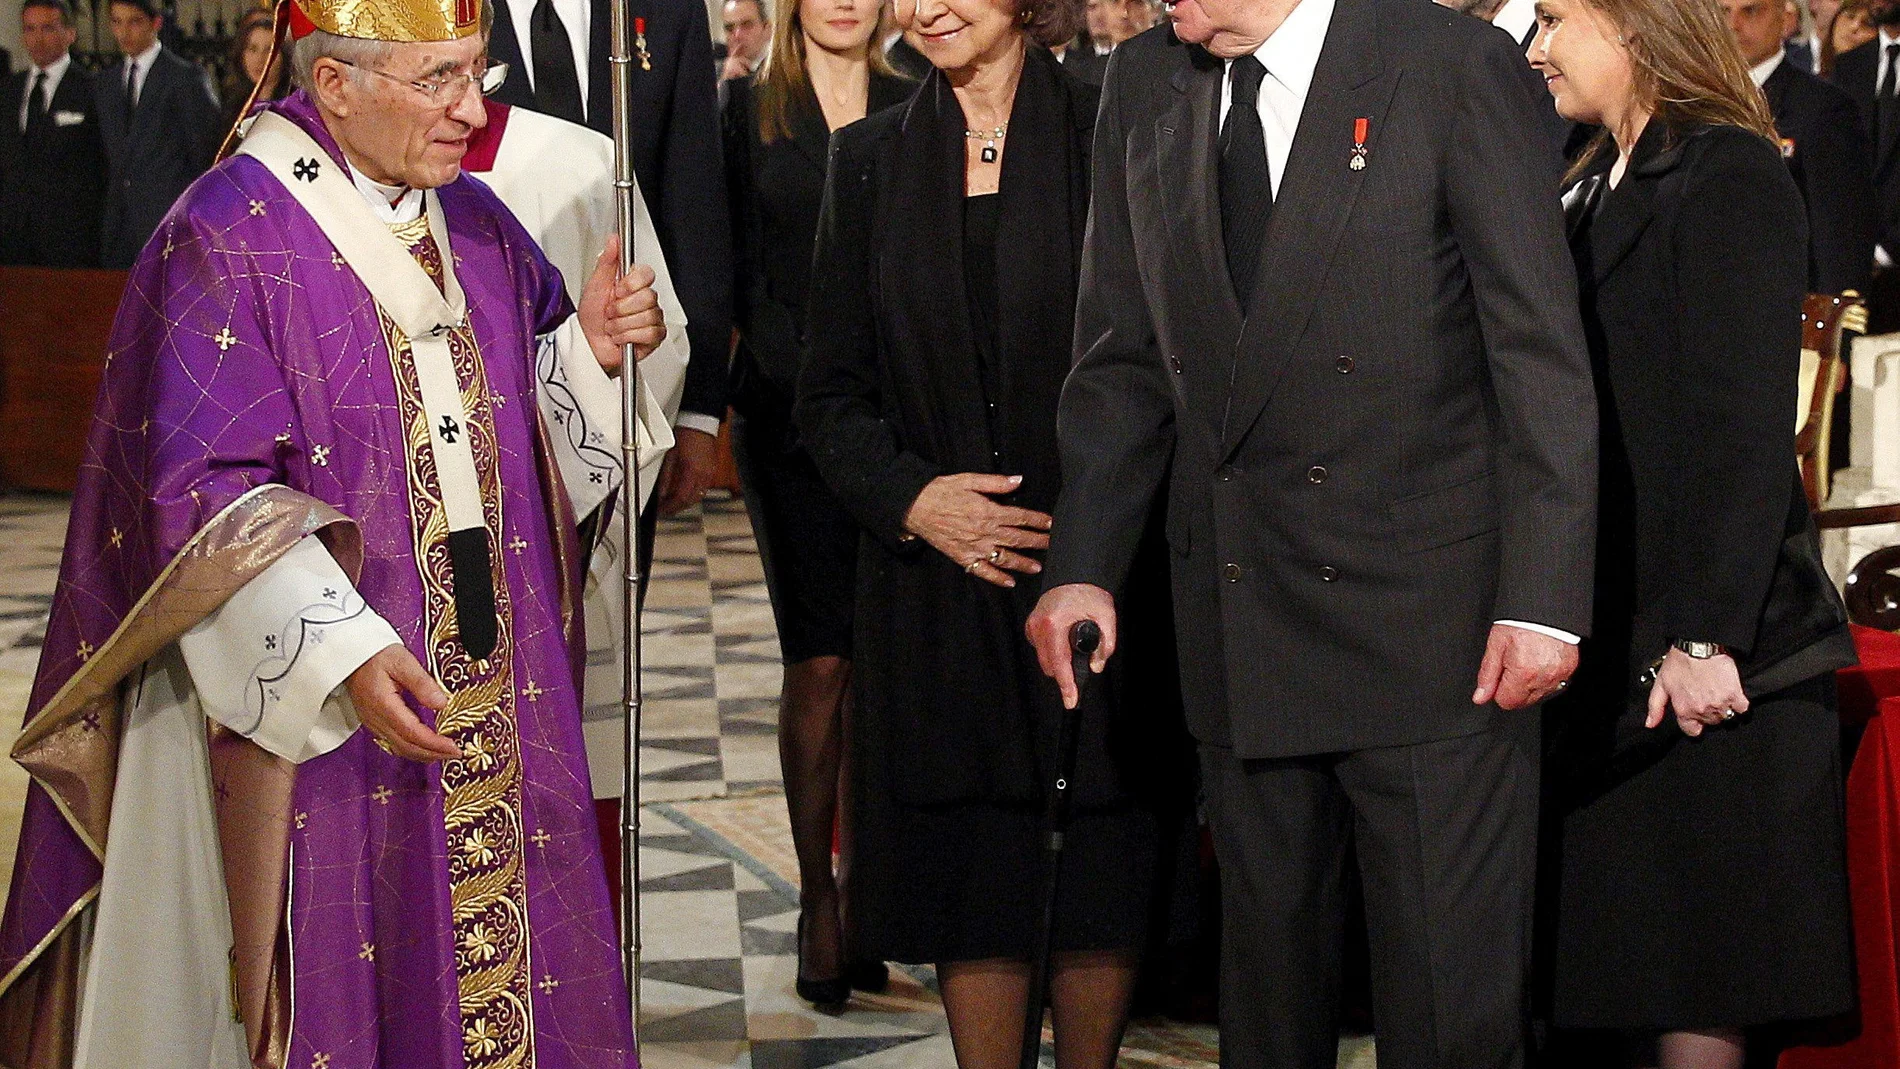 Los Reyes, don Juan Carlos y doña Sofía, saludan al cardenal Rouco Varela